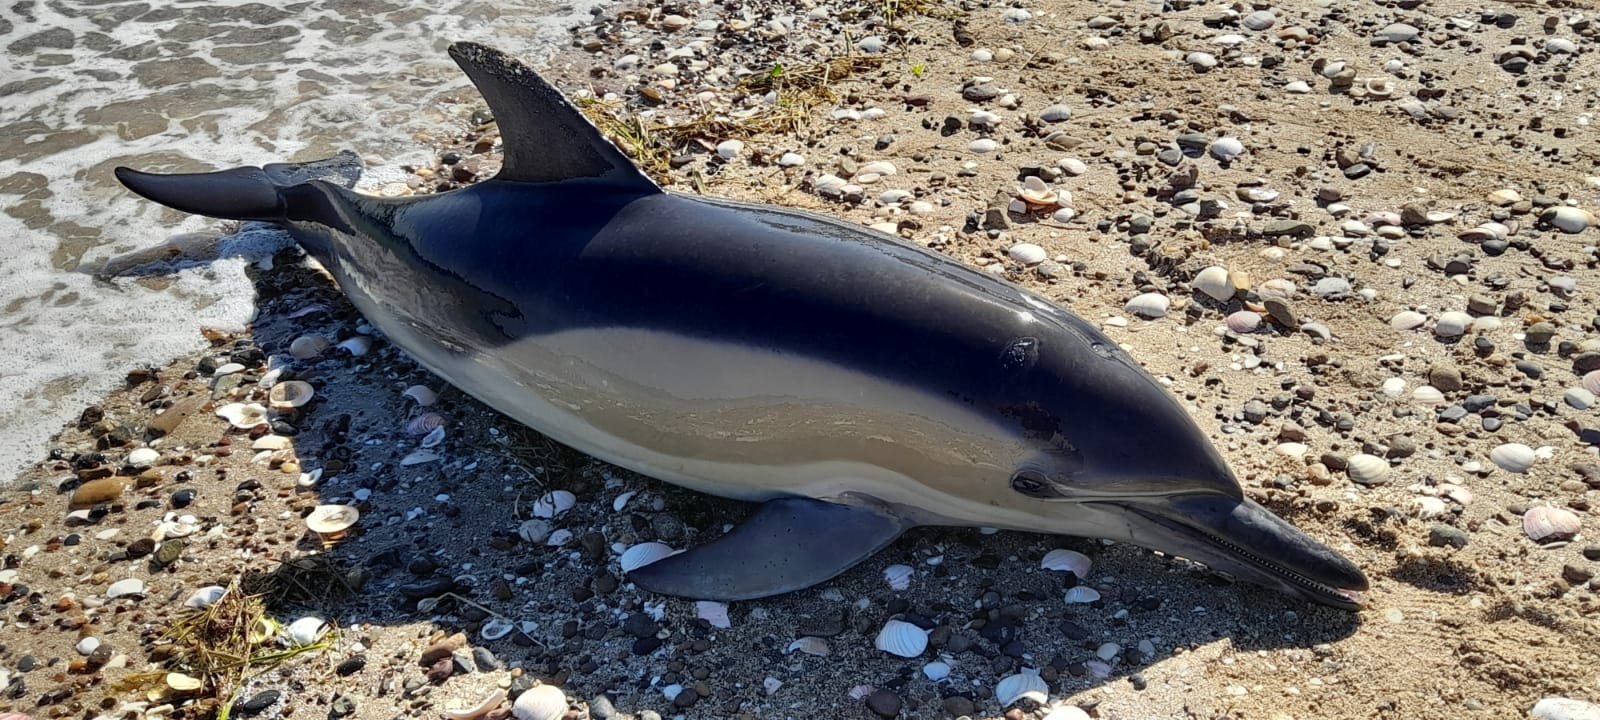 La aparición de los delfines muertos en la costa generó gran conmoción. Fotos: Lorena Venglisky